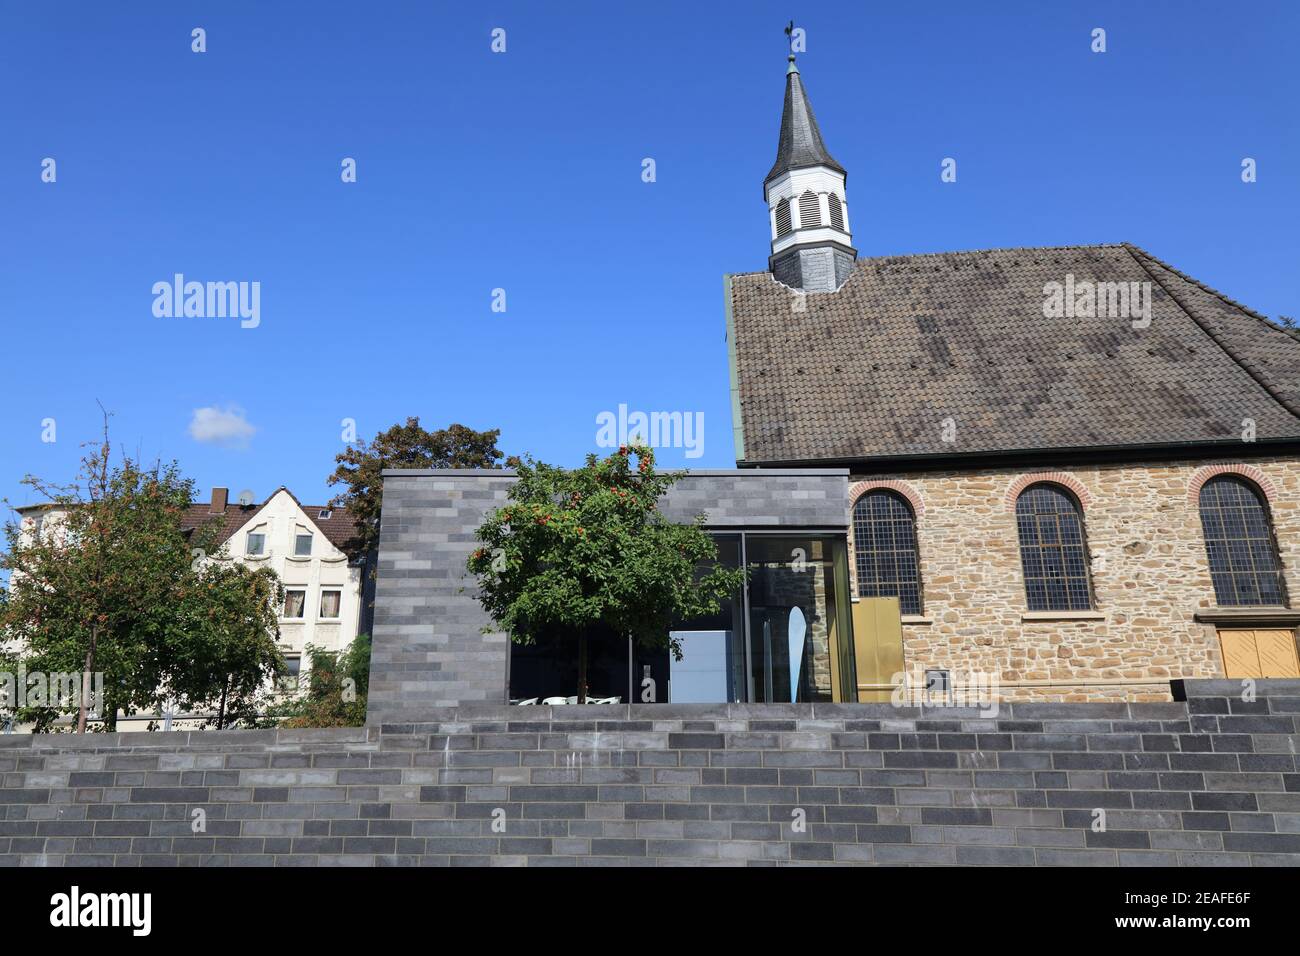 Wattenscheid, Stadtteil der Bochumer Stadt in Deutschland. Evangelisch protestantische Kirche. Stockfoto